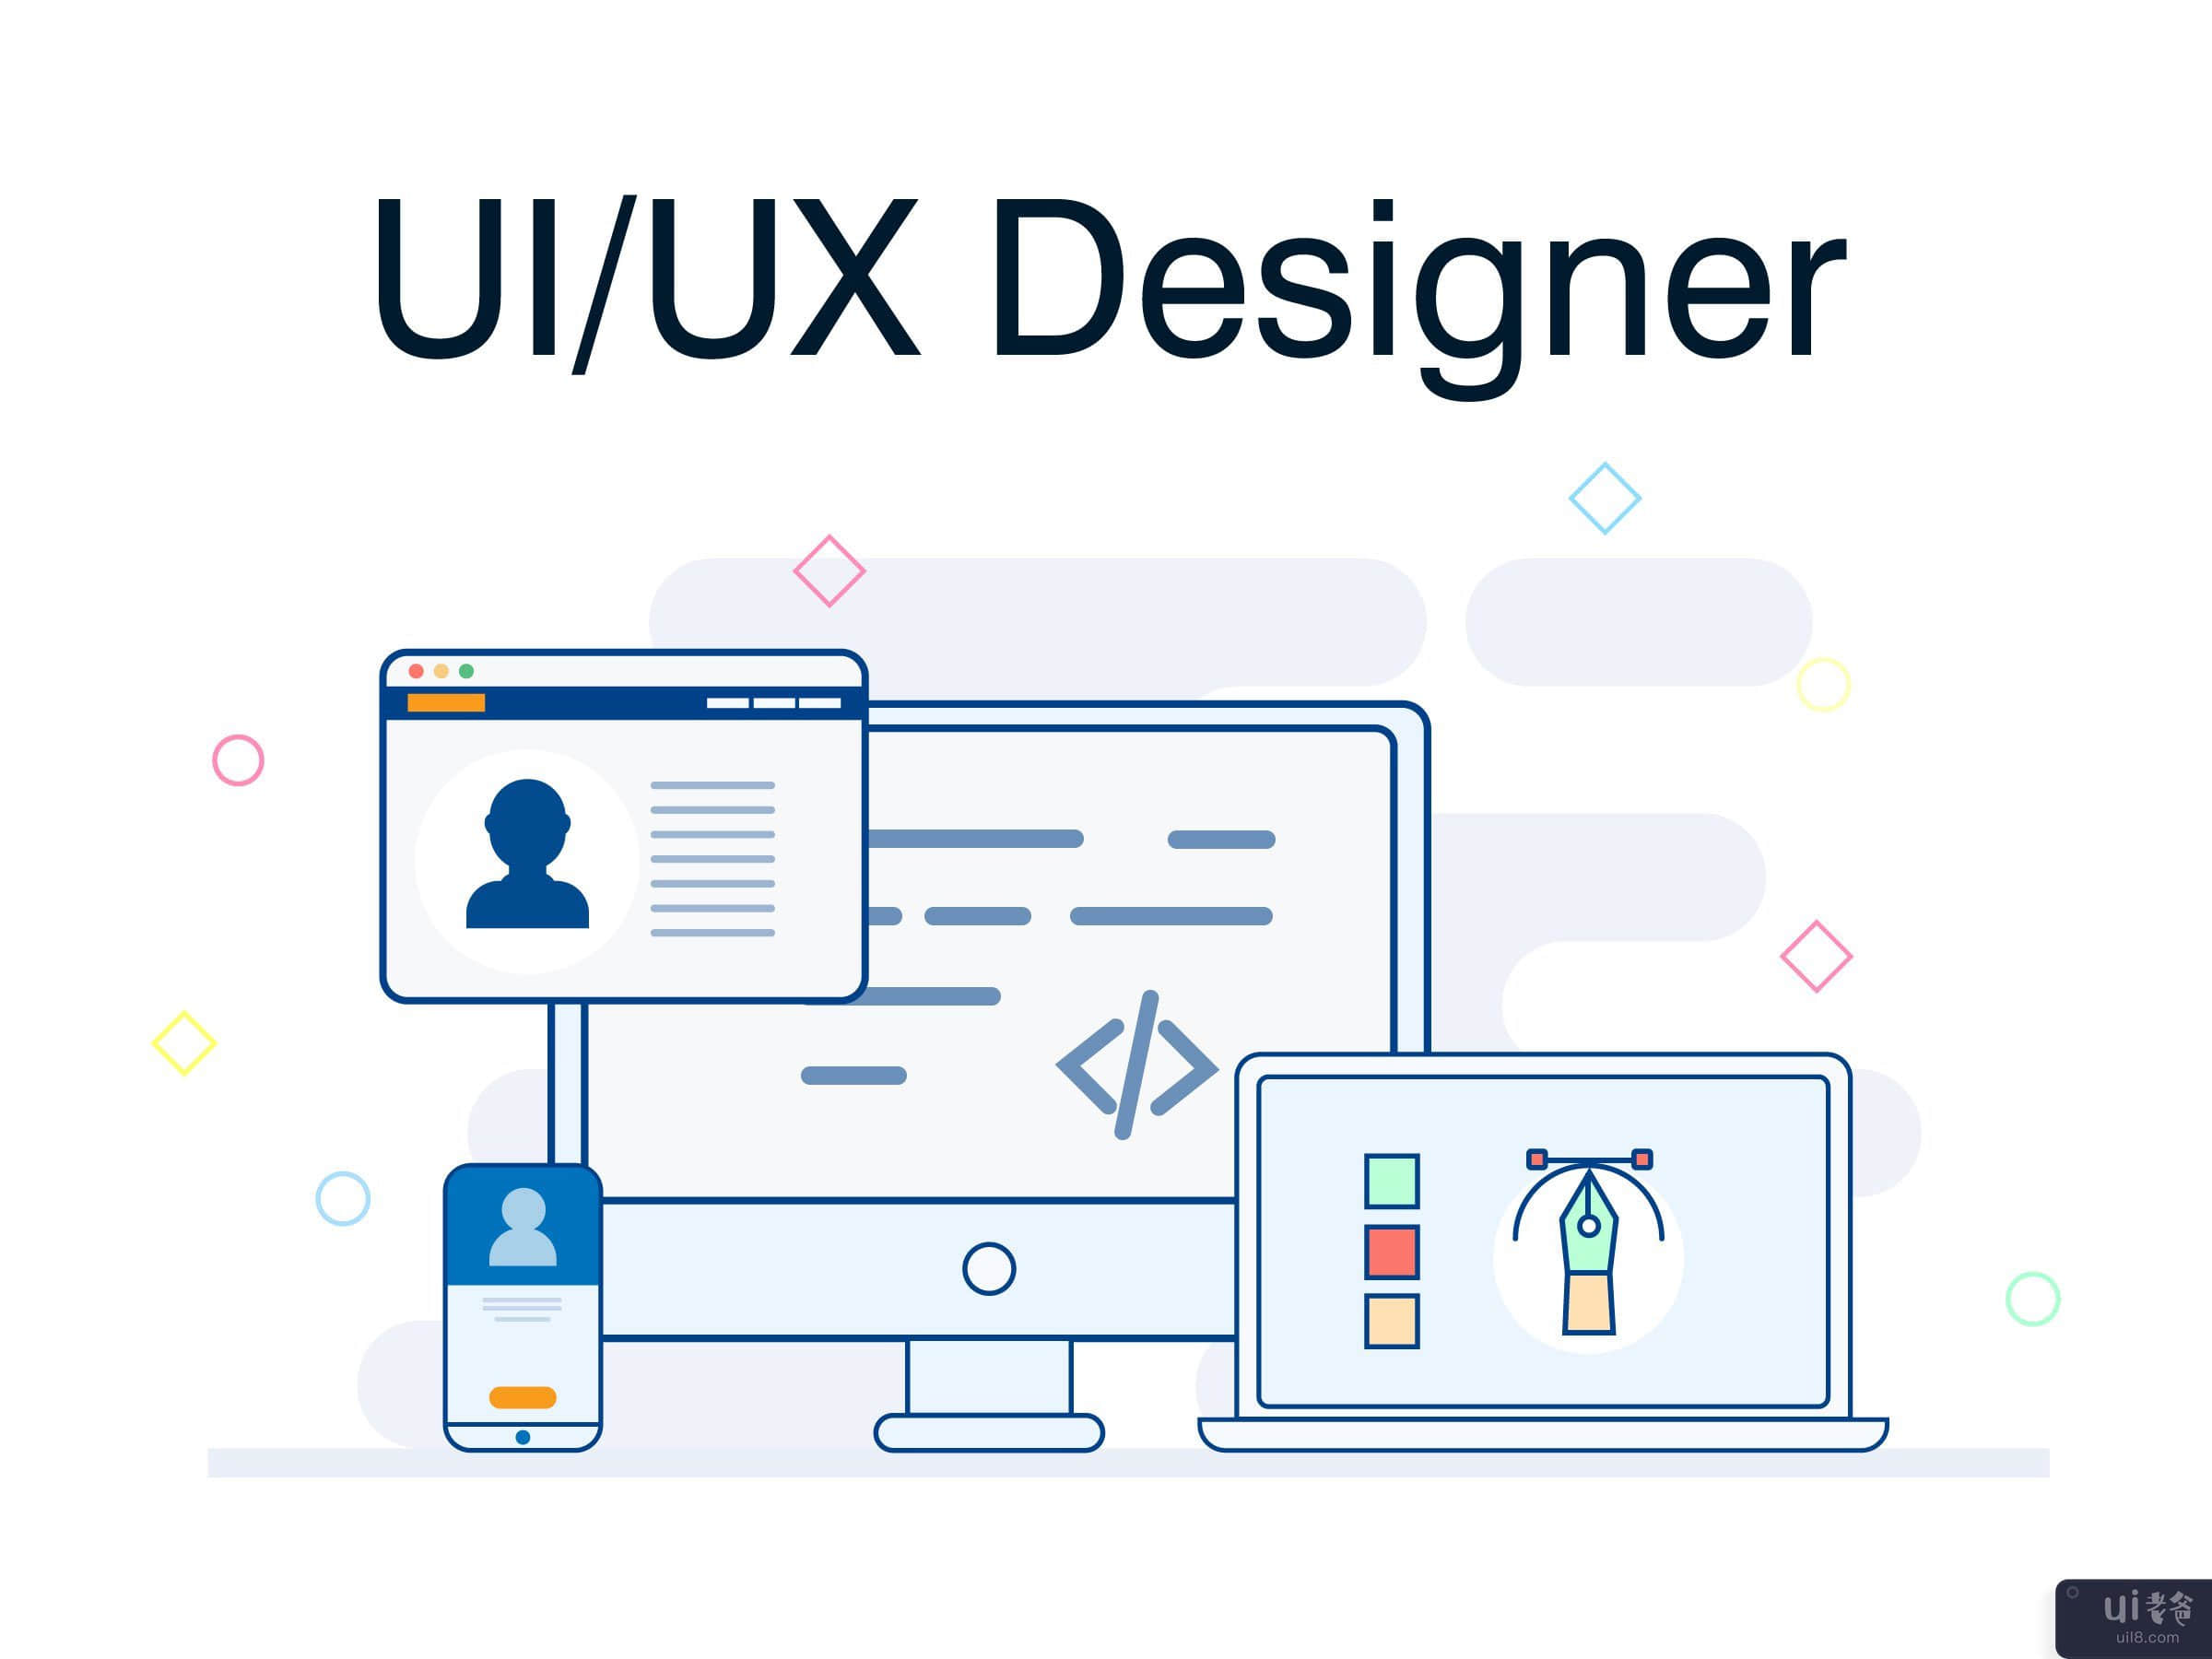 用户界面/用户体验设计师(UI/UX Designer)插图